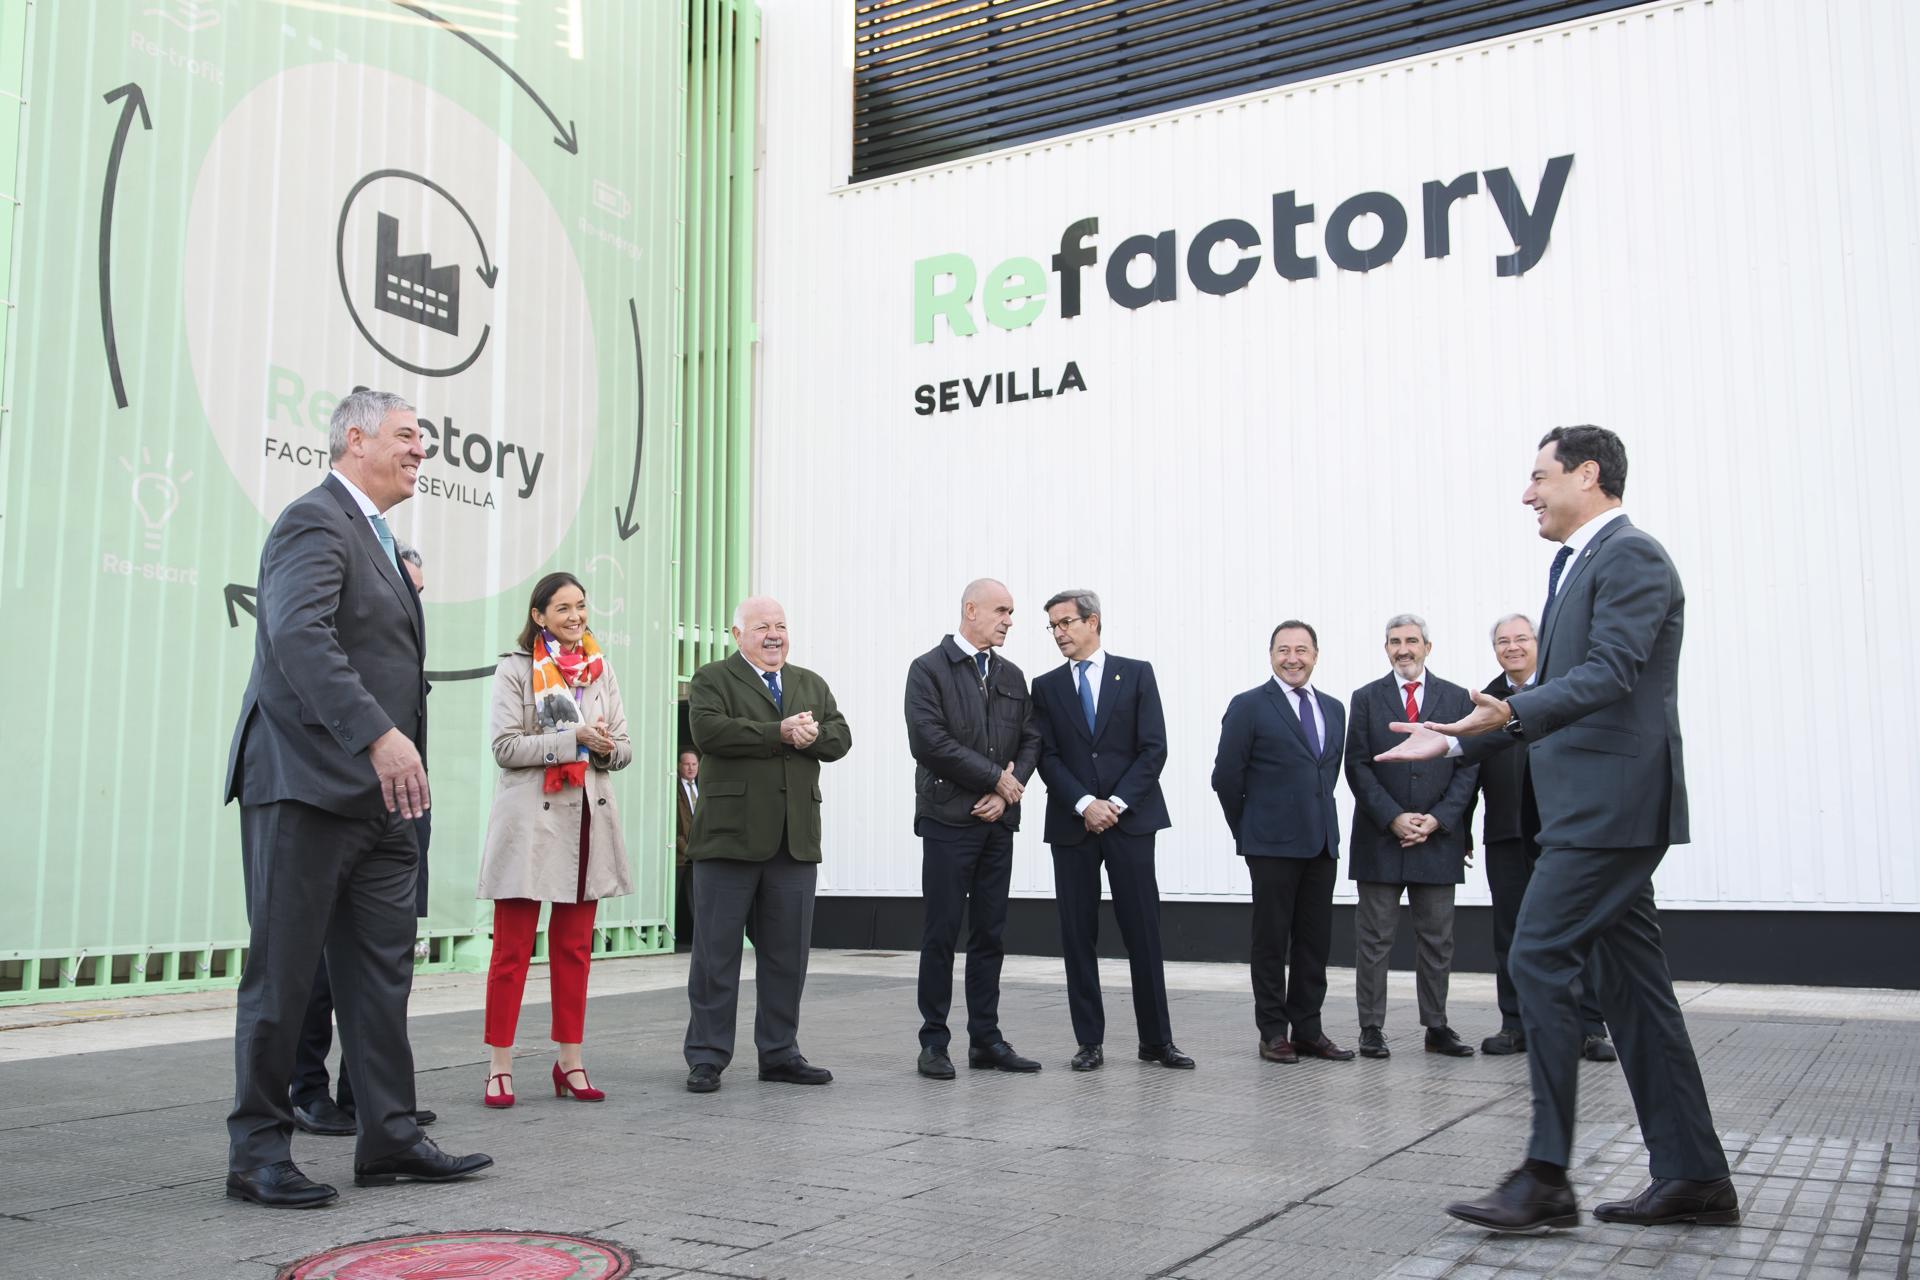 Renault alargará la vida útil a más de 11.000 vehículos al año, en la factoría de Sevilla